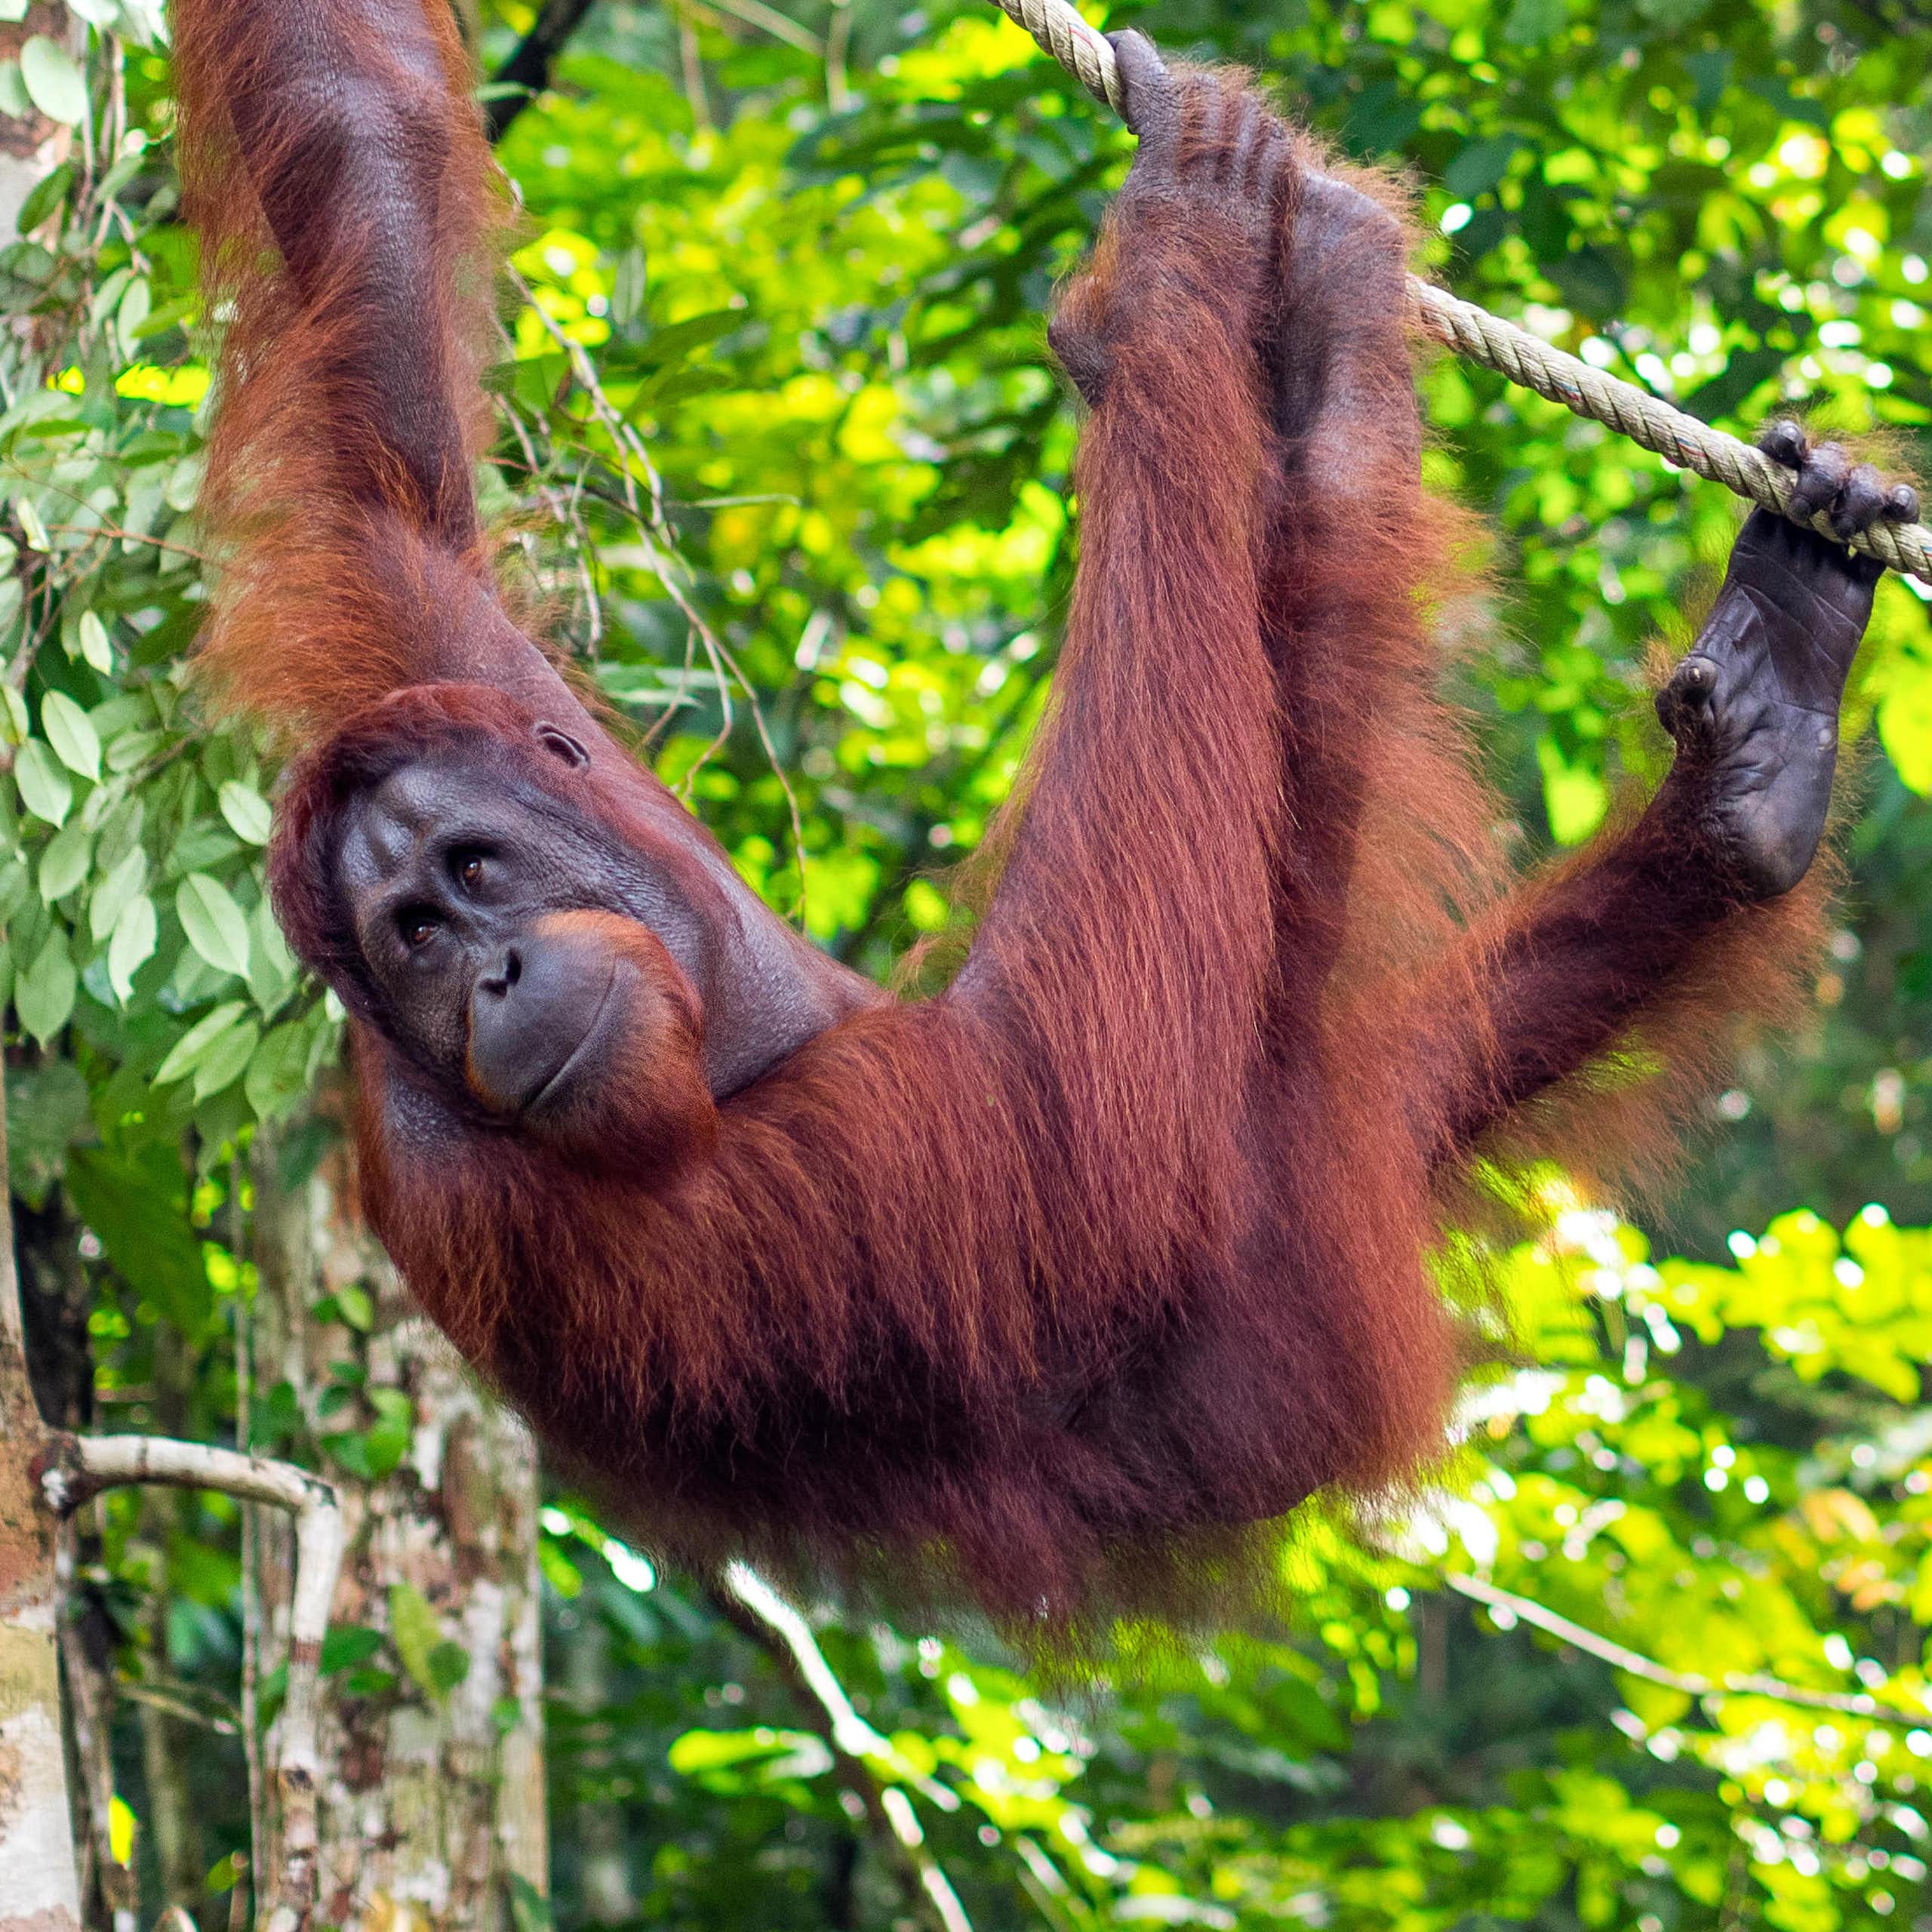 An orangutan hanging off a rope.